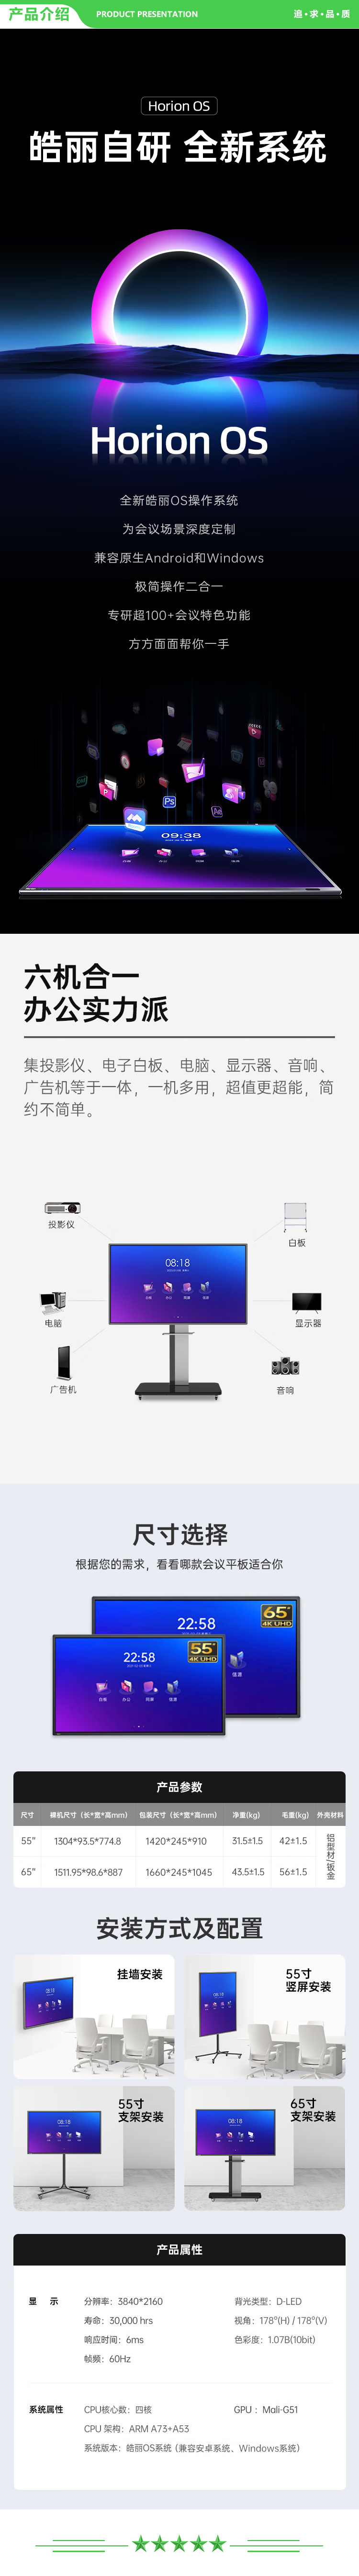 皓丽 E55 含智能笔同屏器壁挂架 55英寸会议平板 交互式电子白板办公一体机触摸4k投影智慧大屏 2.jpg